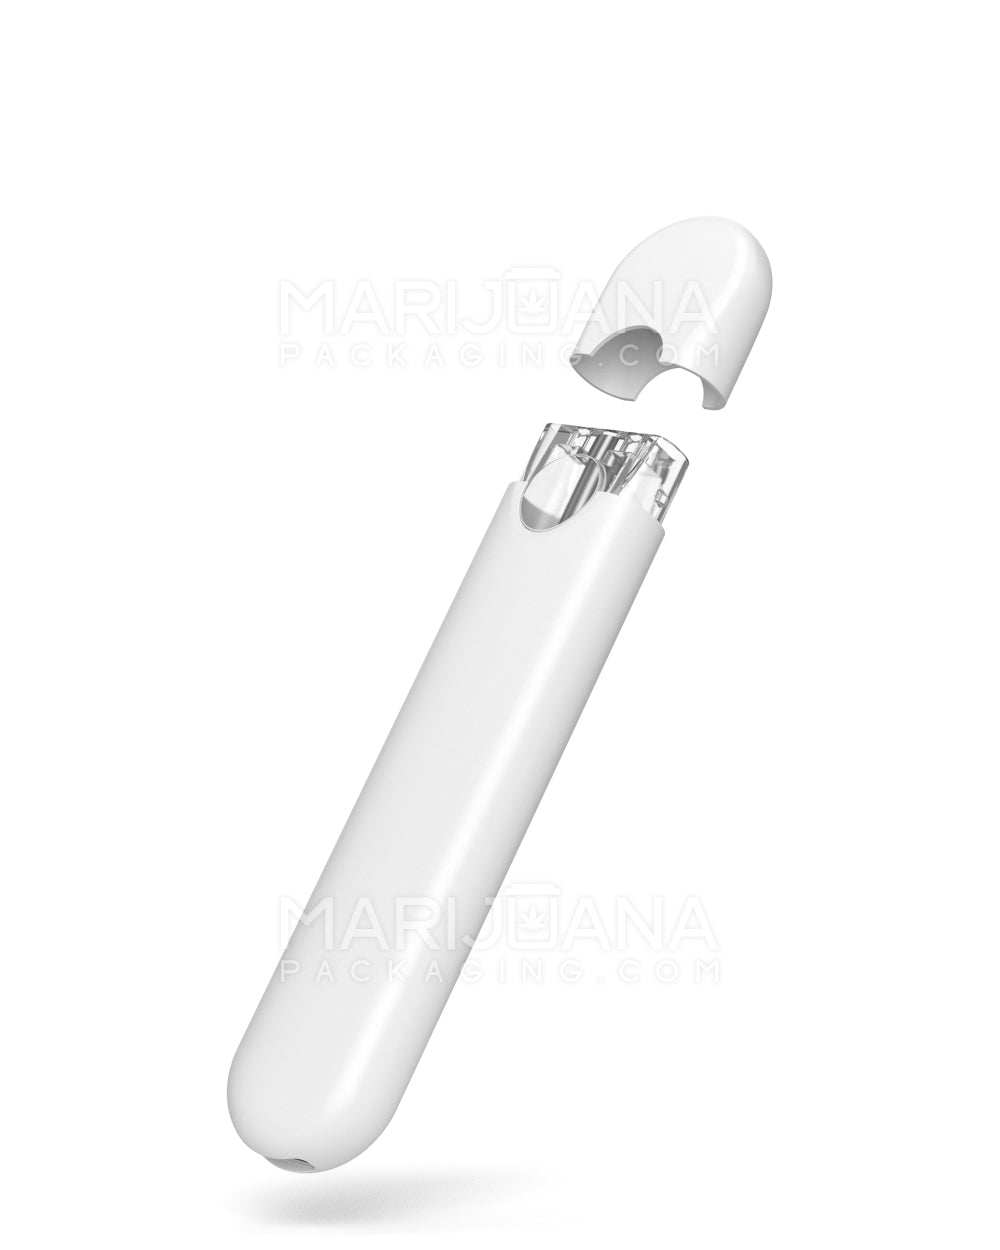 RAE Orion White Ultra Core Disposable Vape Pen | 1mL - 280 mAh | Sample